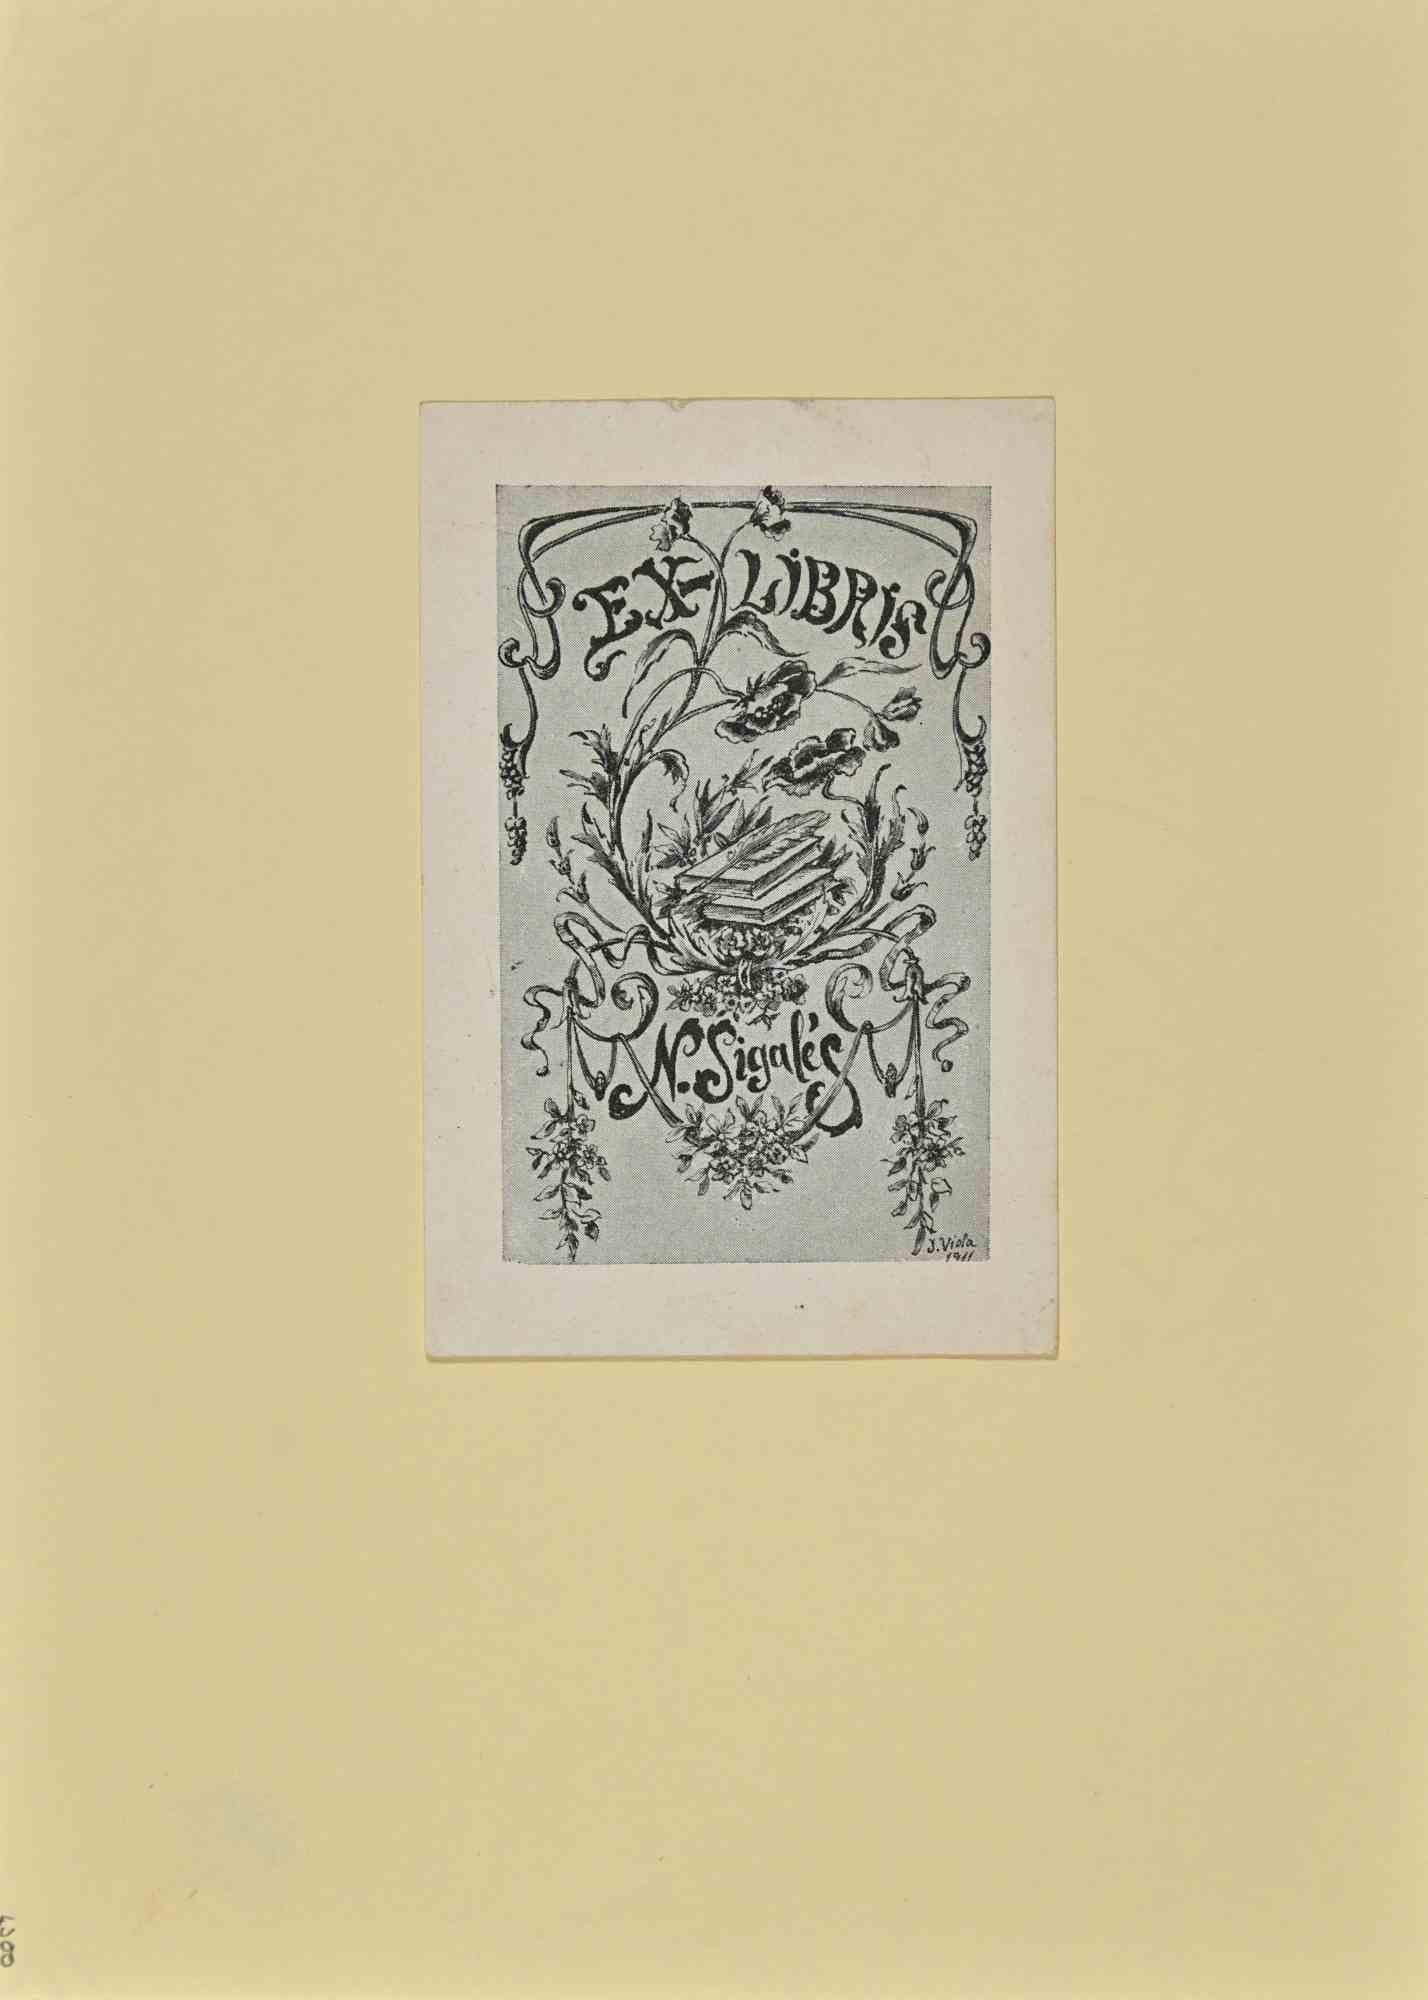 Ex Libris - N. Sigale ist ein modernes Kunstwerk, das 1911 von José (Josepe) Viola realisiert wurde.
 
Ex Libris. S/W-Holzschnitt auf Papier. 
 
Das Werk ist auf elfenbeinfarbenen Karton geklebt. Signiert auf der Platte und datiert am rechten Rand
